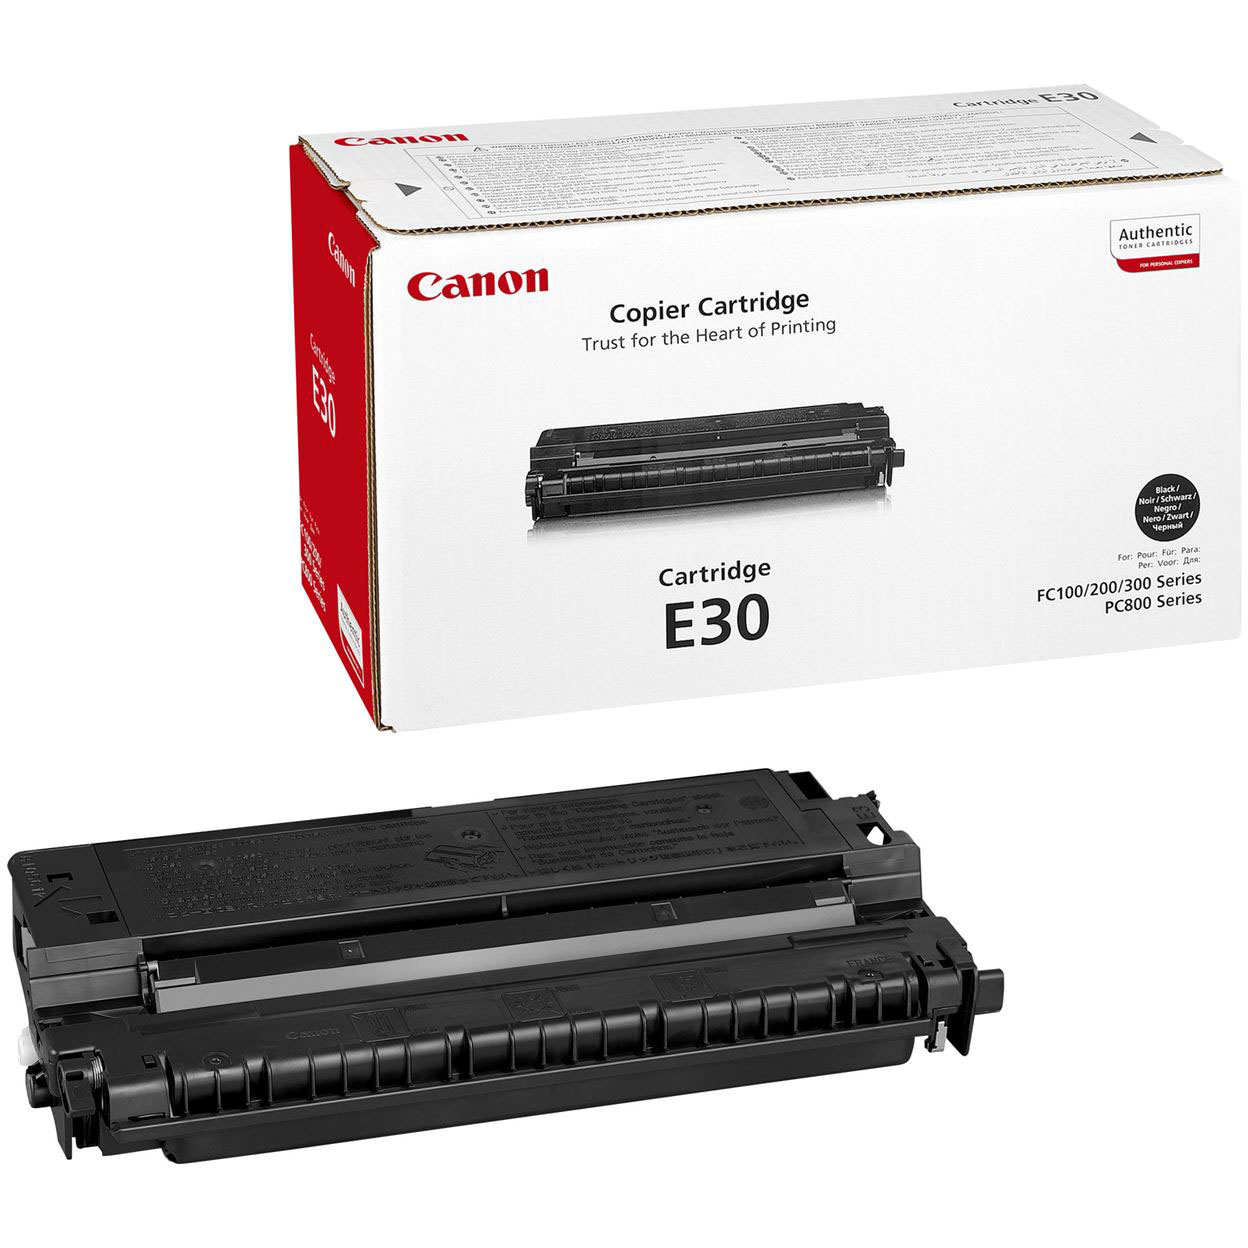 Original Canon E30 Black High Capacity Toner Cartridge (1491A003BA)